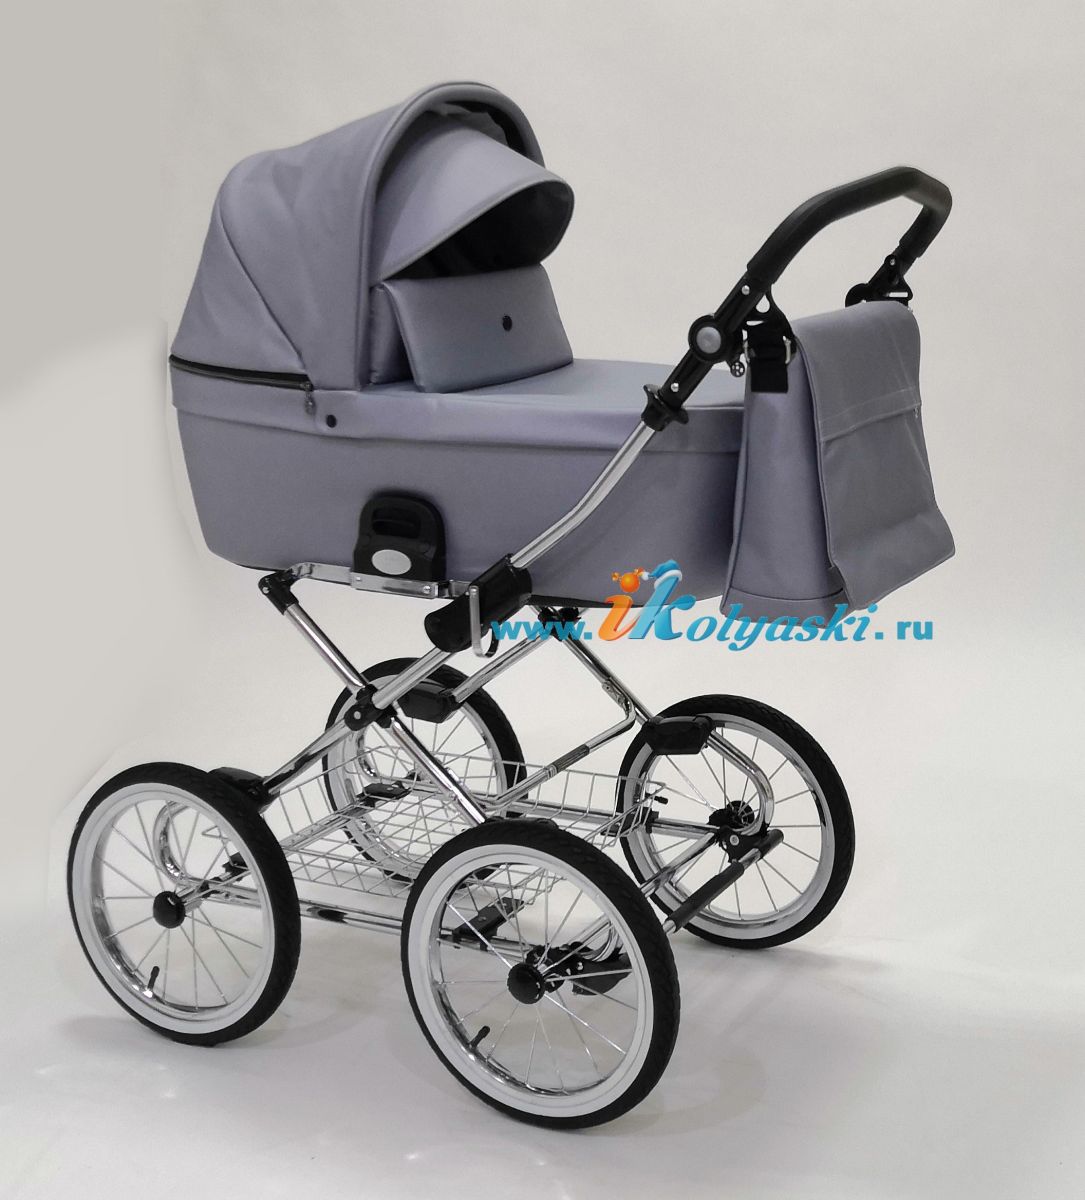 Roan Coss Classic коляска для новорожденных 3 в 1 на больших колесах новые цвета 2020 - купить в интернет-магазине Иколяски в Москве с доставкой по РФ - цвет Grey Pearl